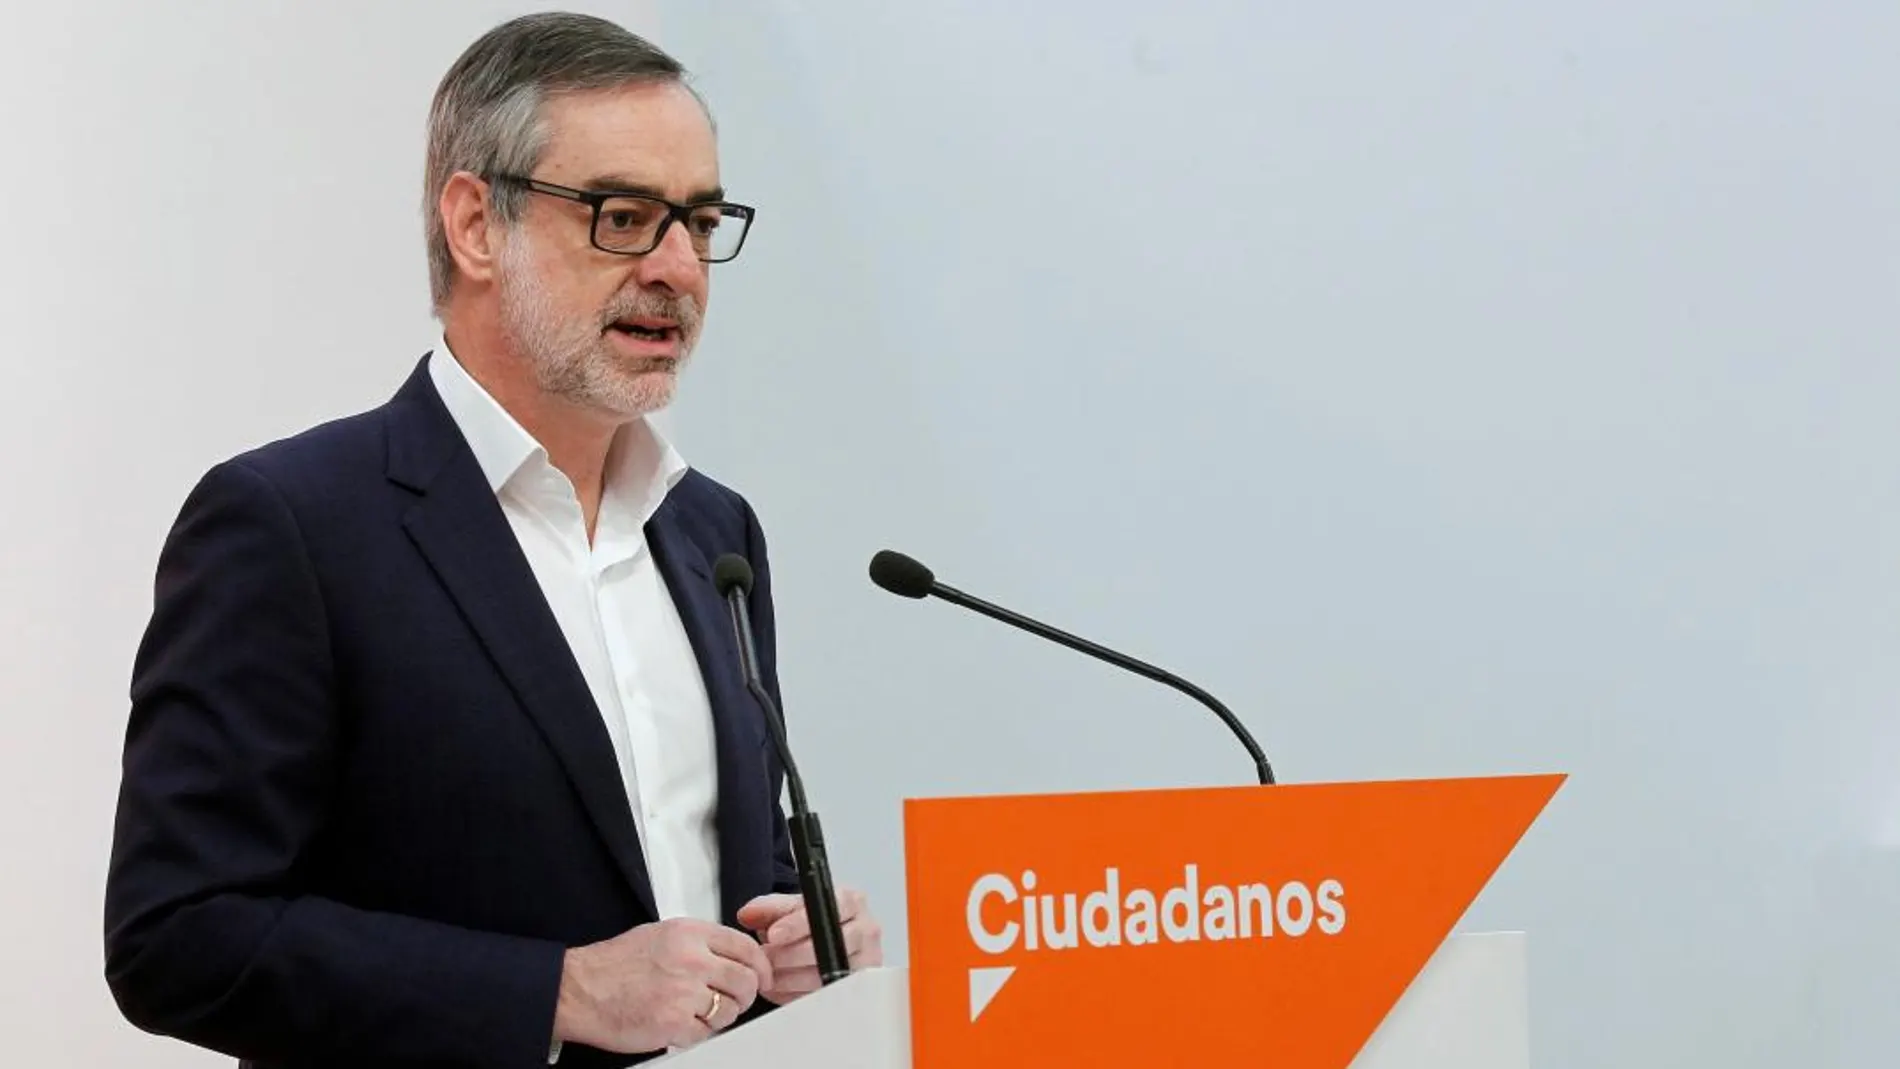 El secretario general de Ciudadanos , José Manuel Villegas, durante la rueda de prensa ofrecida hoy en la sede nacional del partido